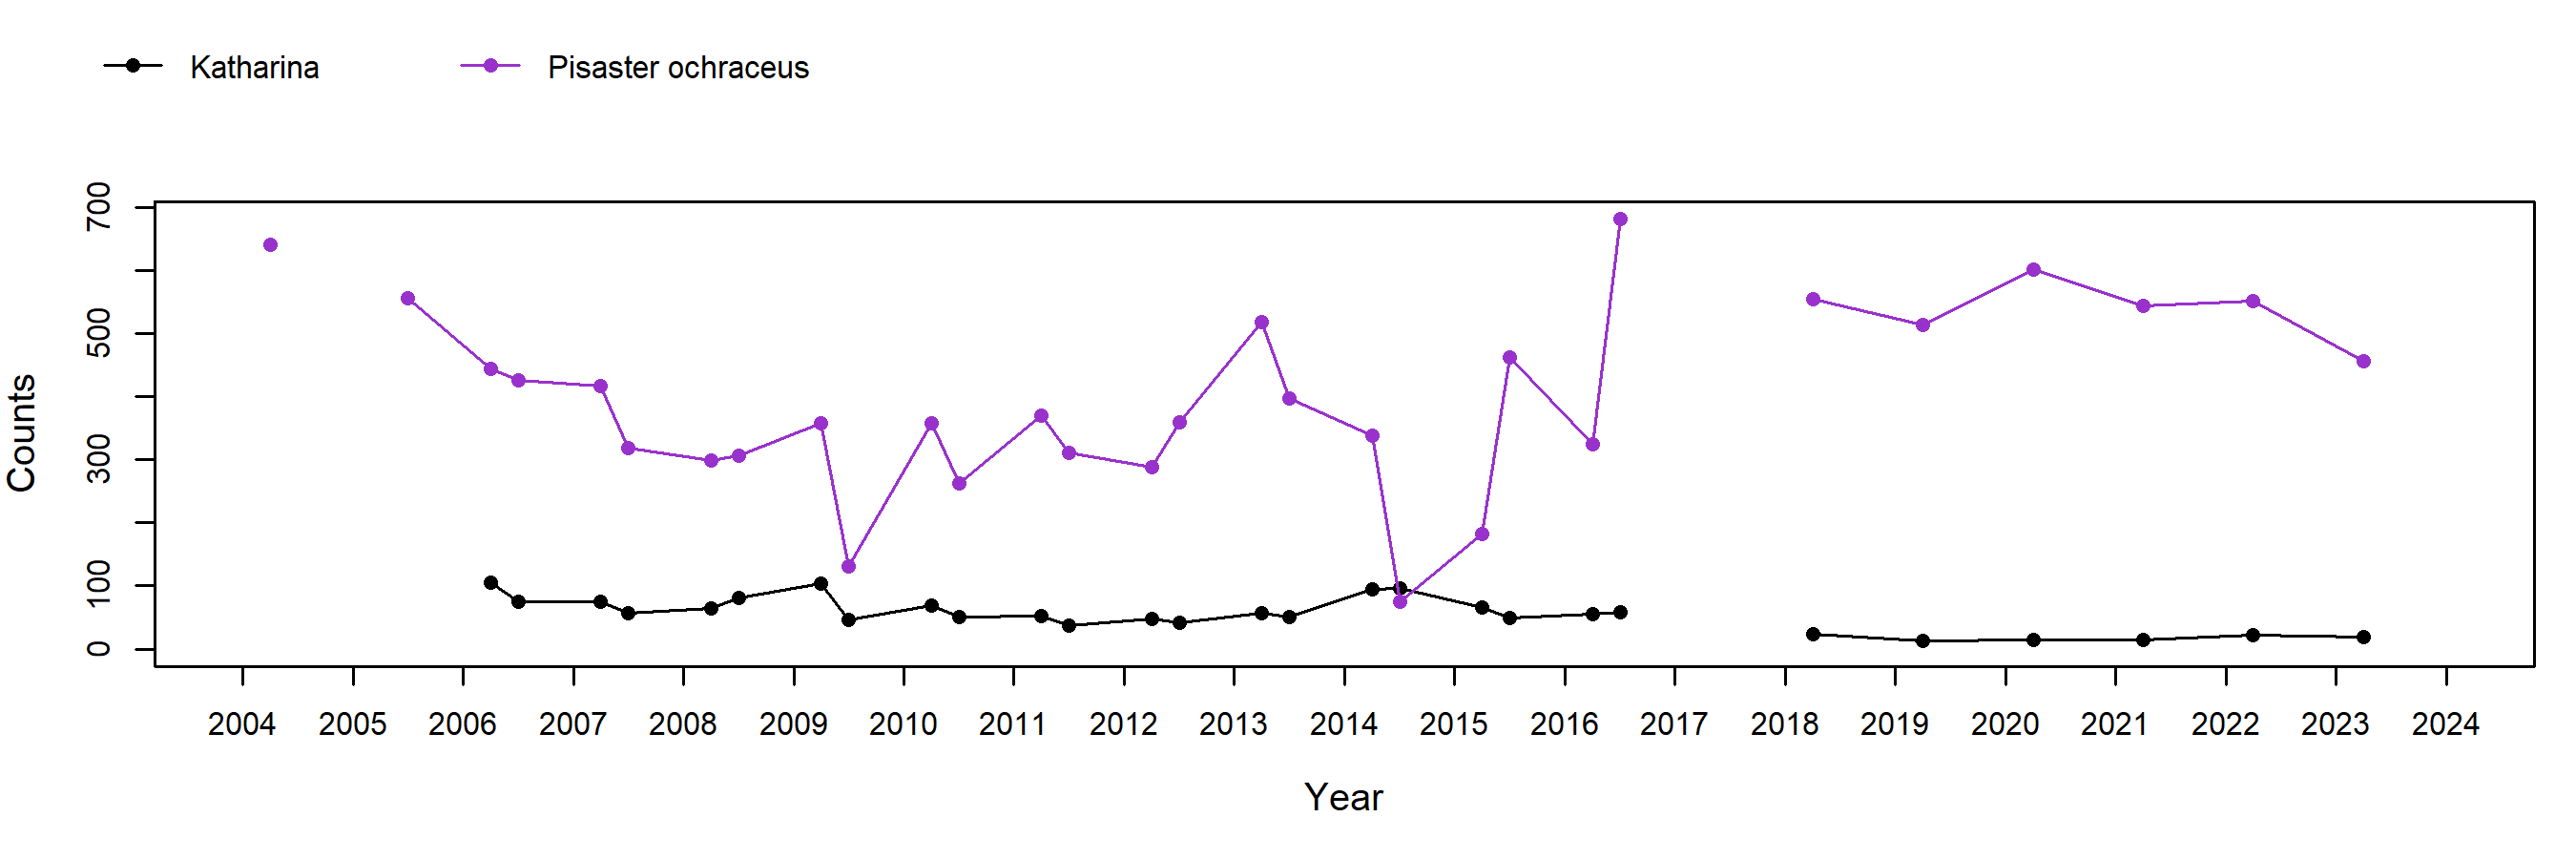 Enderts Pisaster trend plot